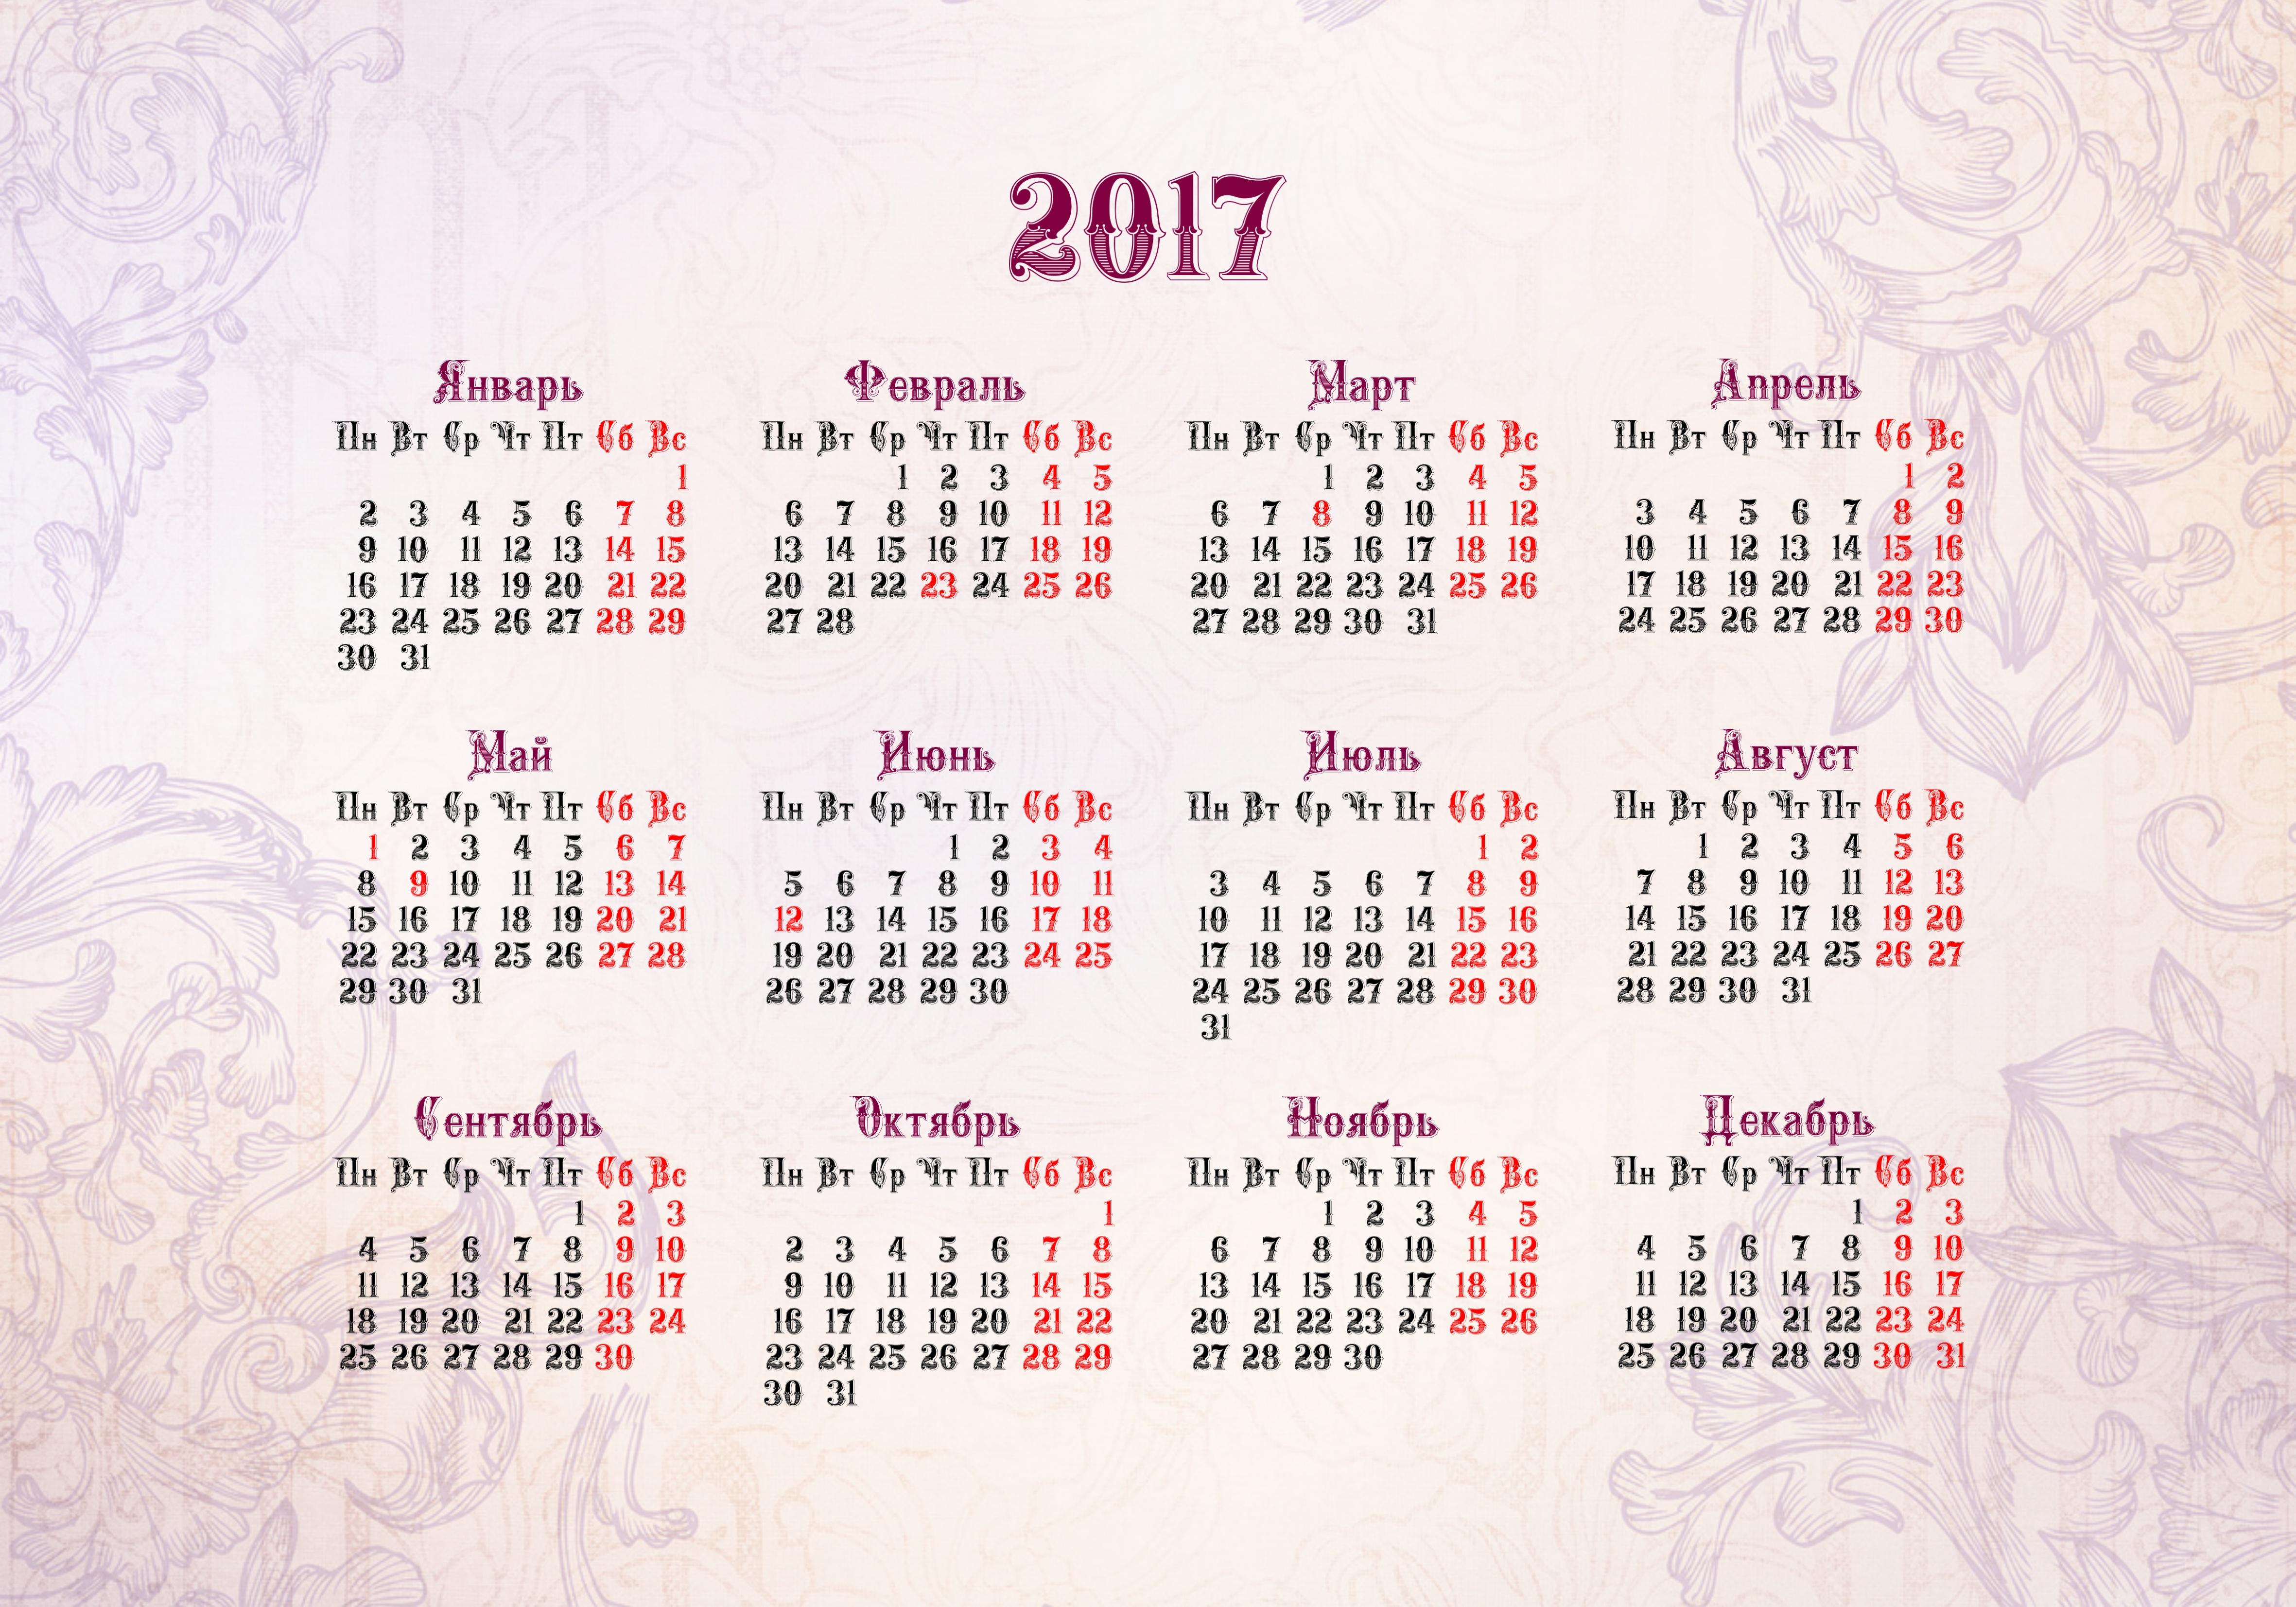 Календарь январь 2017. Календарь 2017 года. Календарь 2017г. Календарь 2017г.по месяцам. Календарь 2017 года по месяцам.